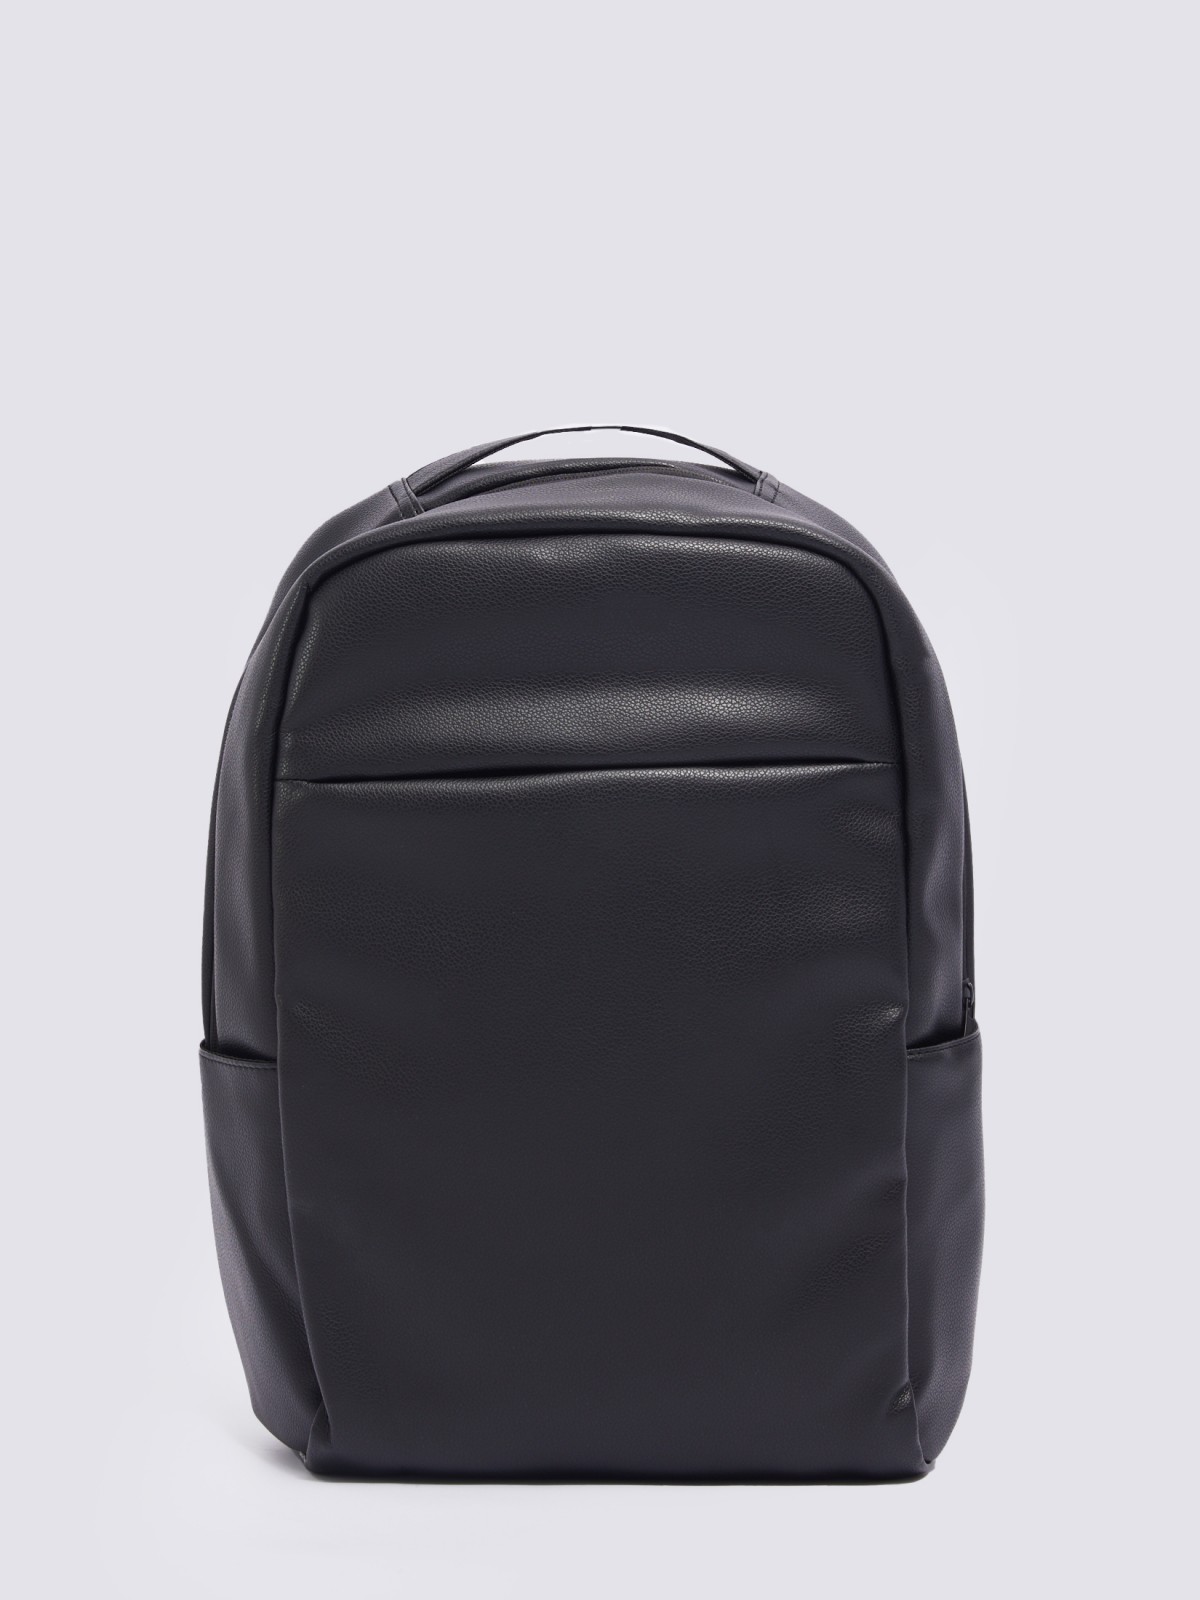 Городской рюкзак из экокожи с отделением для ноутбука/планшета zolla 014119462035, цвет черный, размер No_size